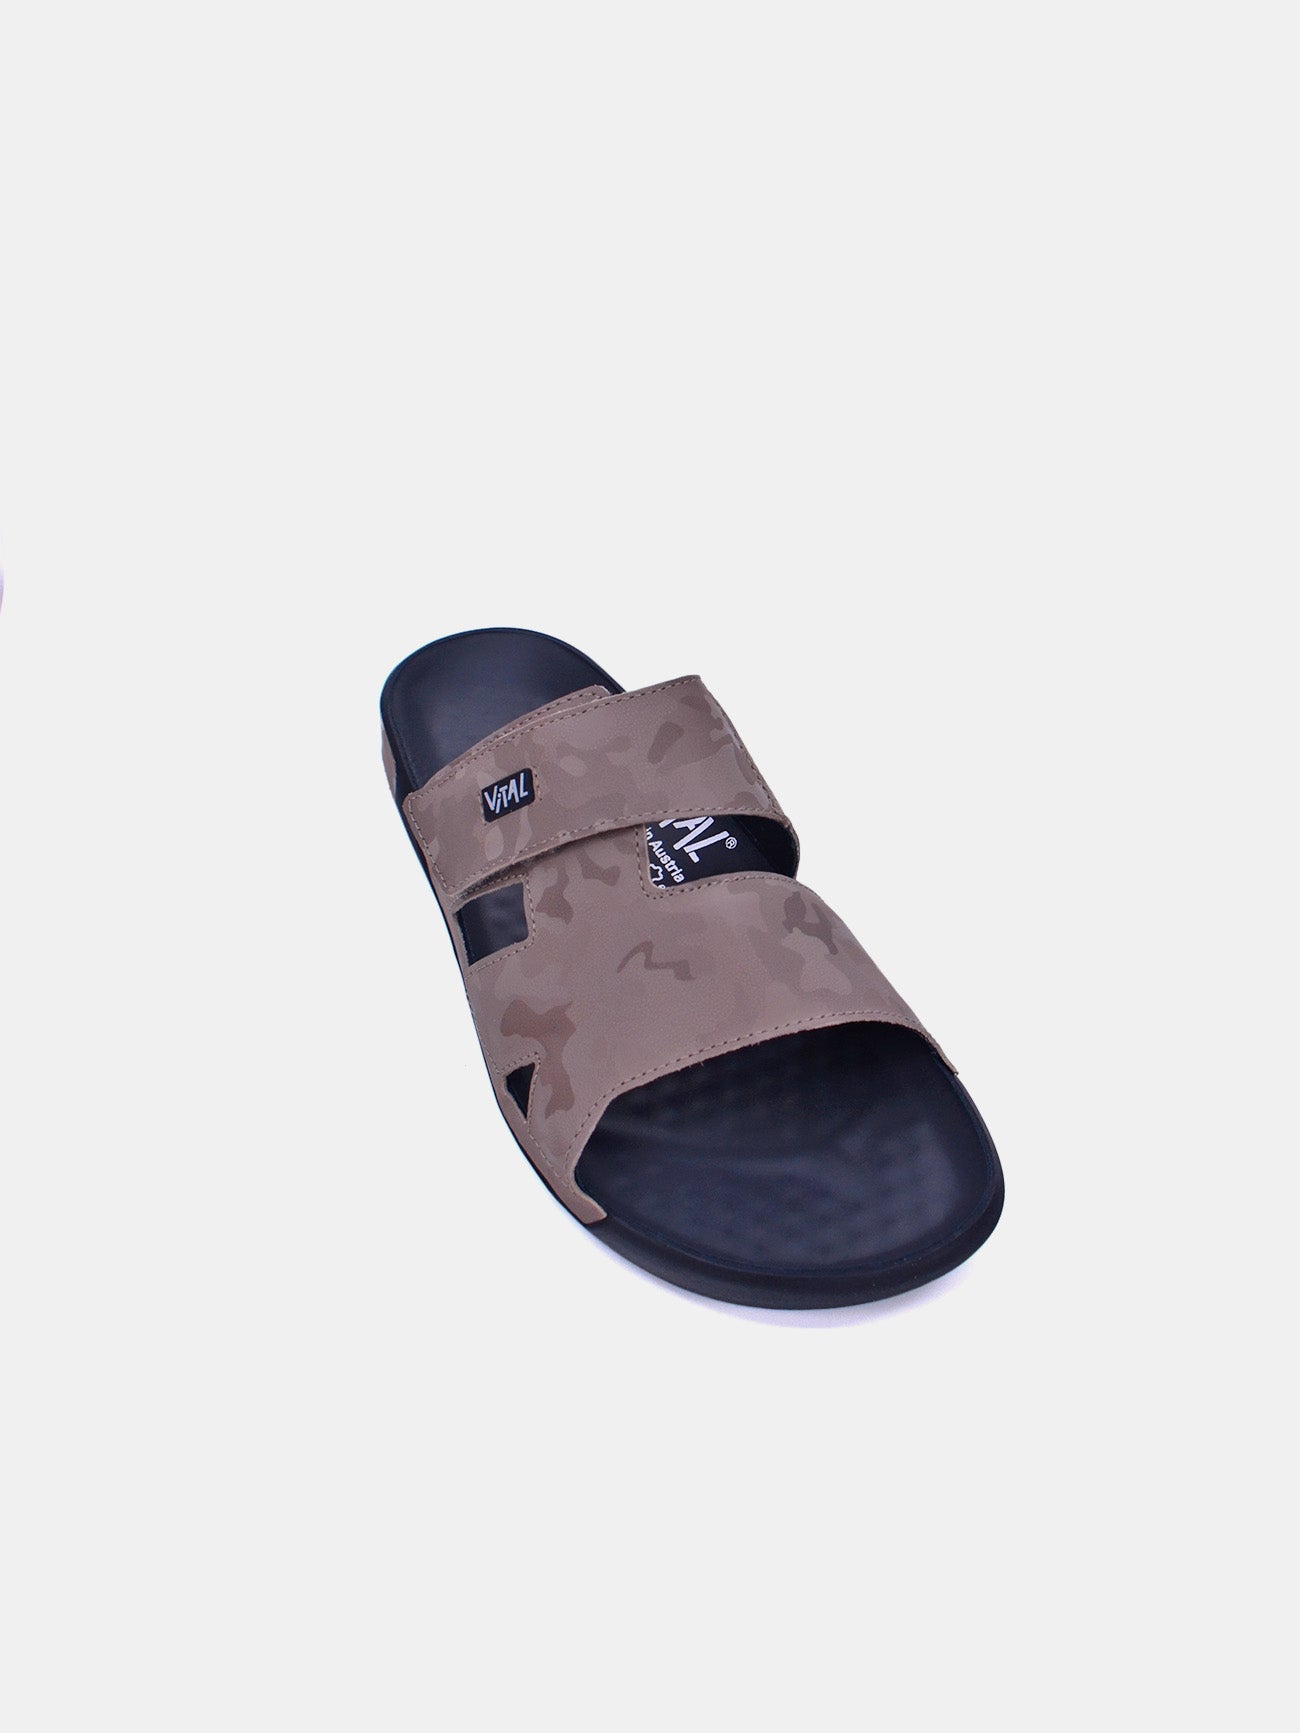 Vital 85101AS Men's Sandals #color_Beige